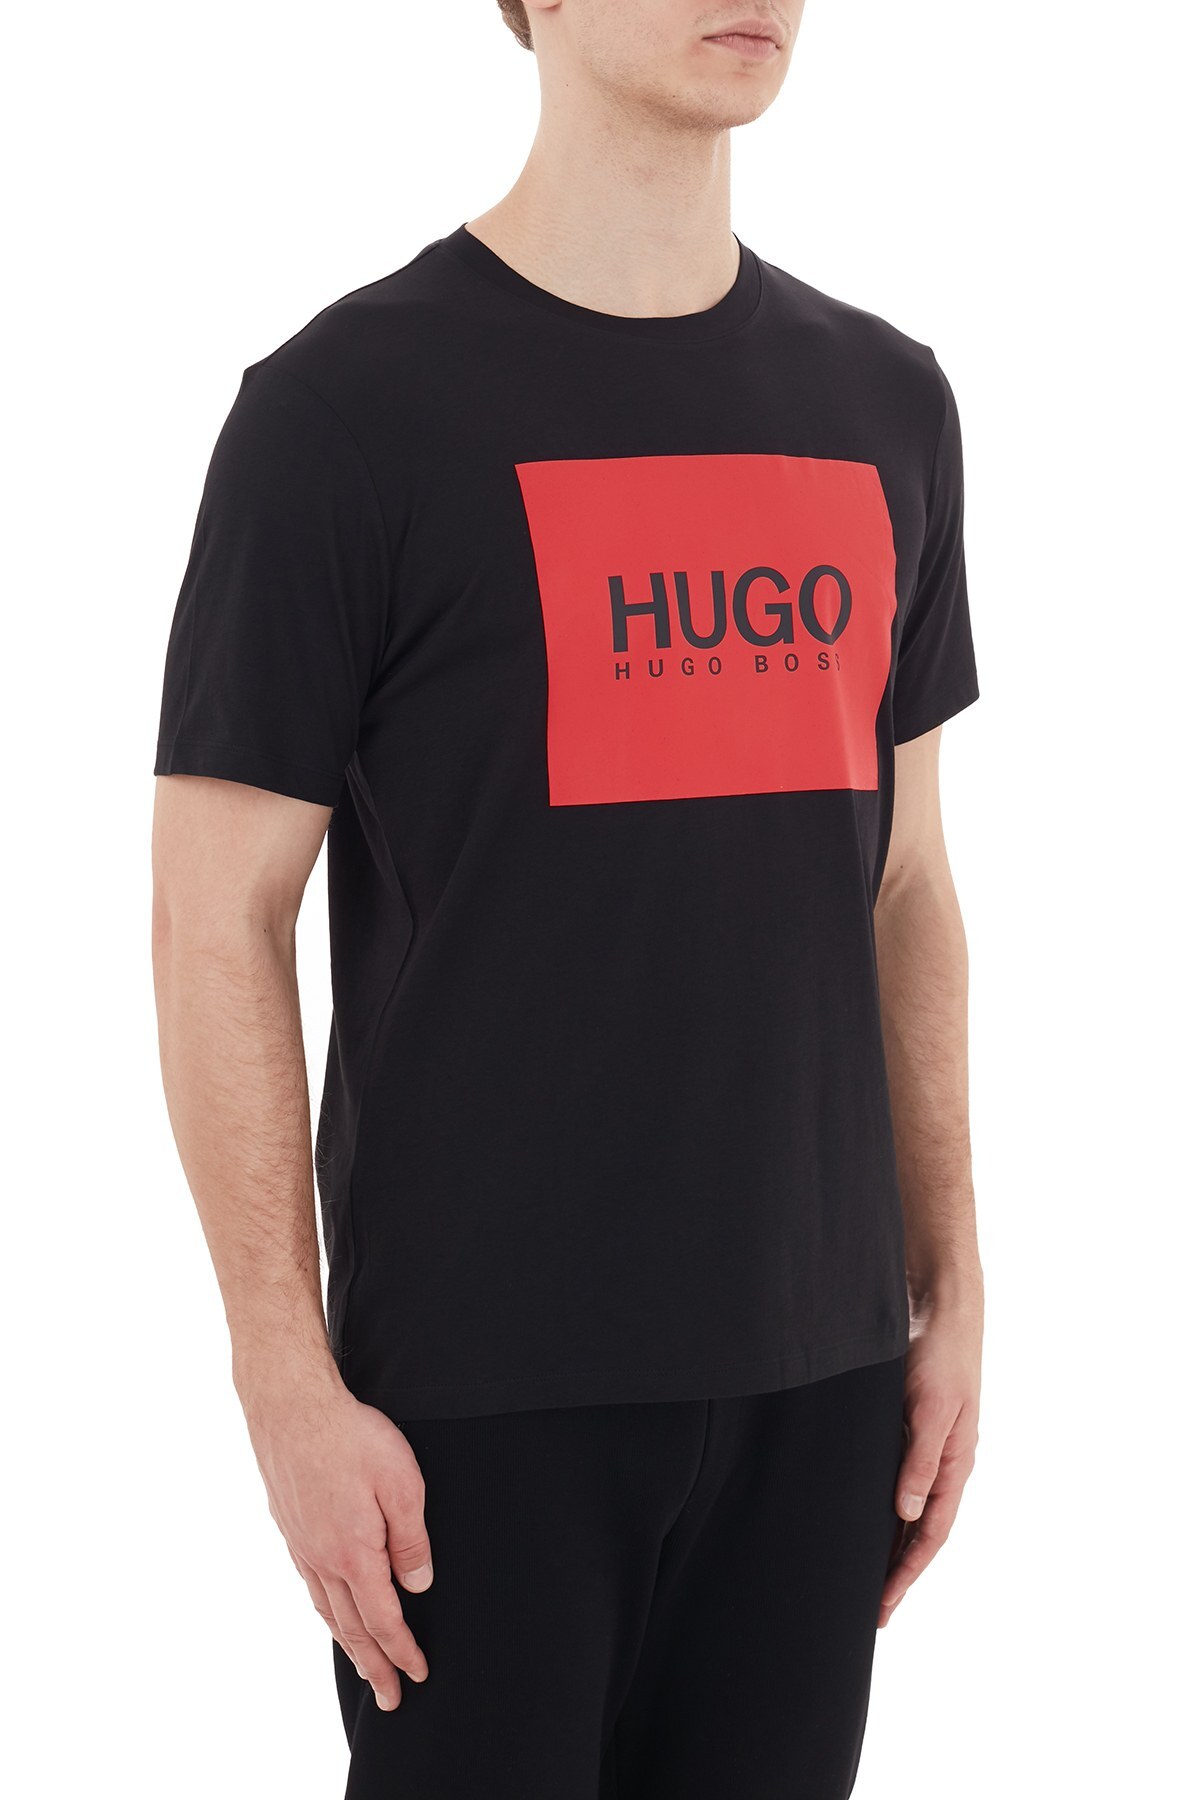 Hugo Boss Logo Baskılı Bisiklet Yaka % 100 Pamuk Erkek T Shirt 50437291 001 SİYAH